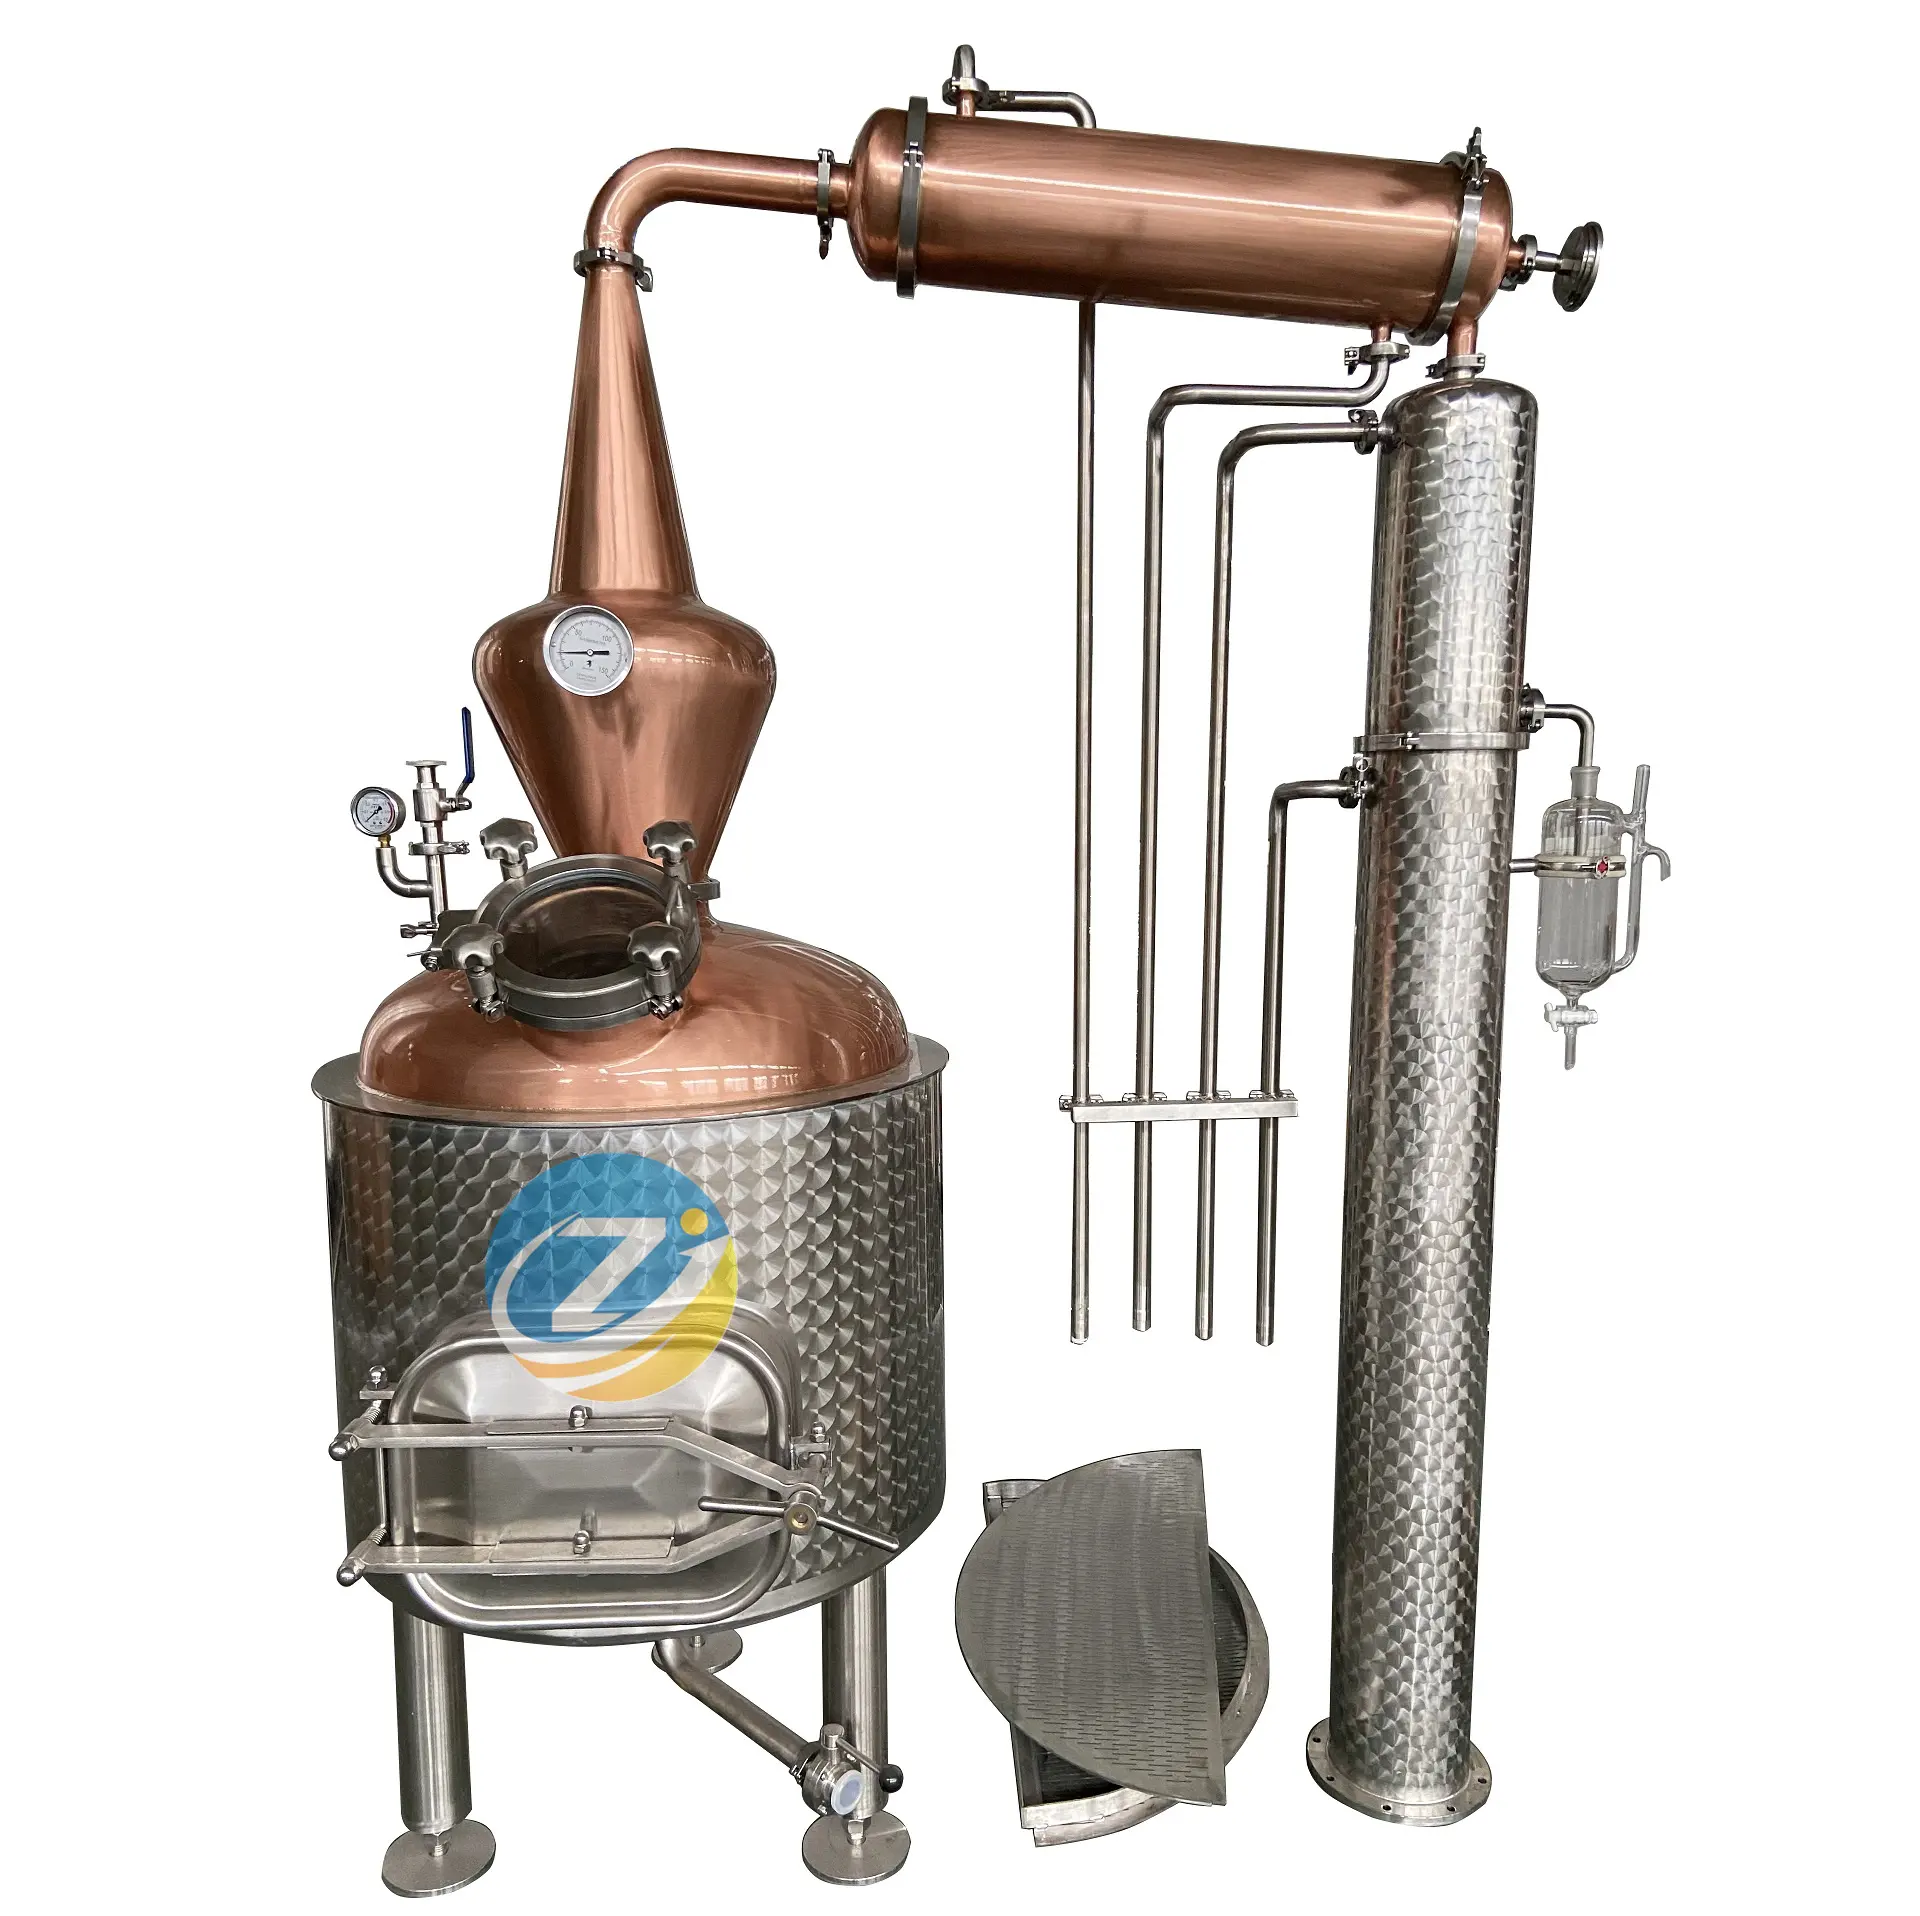 250L Neues Handwerk für ätherisches Öl Hydro lat zur Herstellung einer Dampf destillation maschine für ätherische Öle